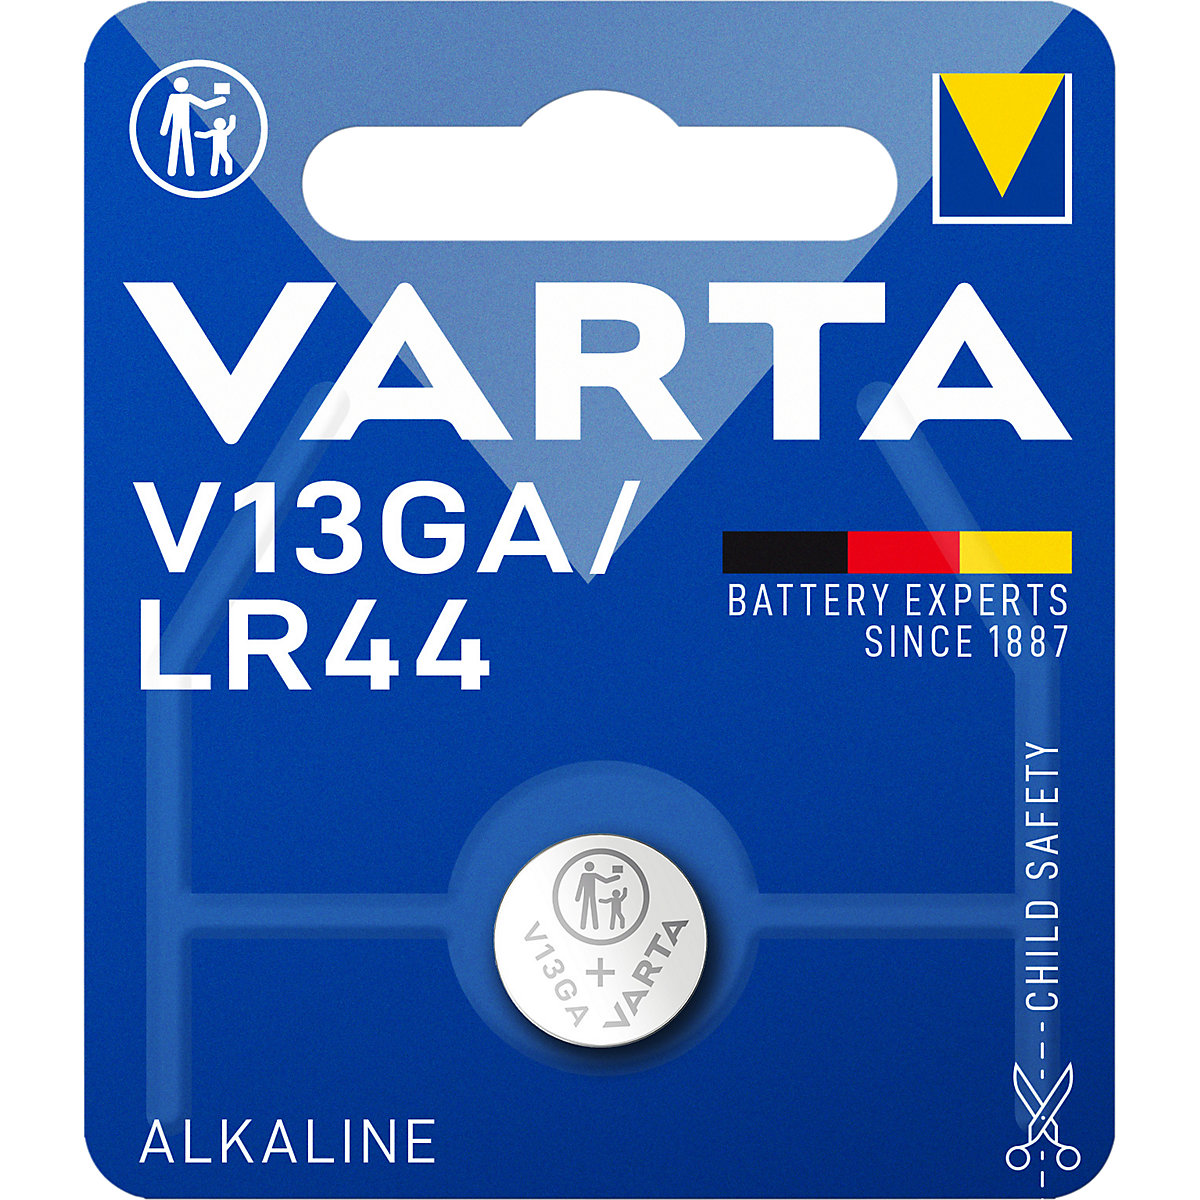 Posebna baterija ALKALINE - VARTA